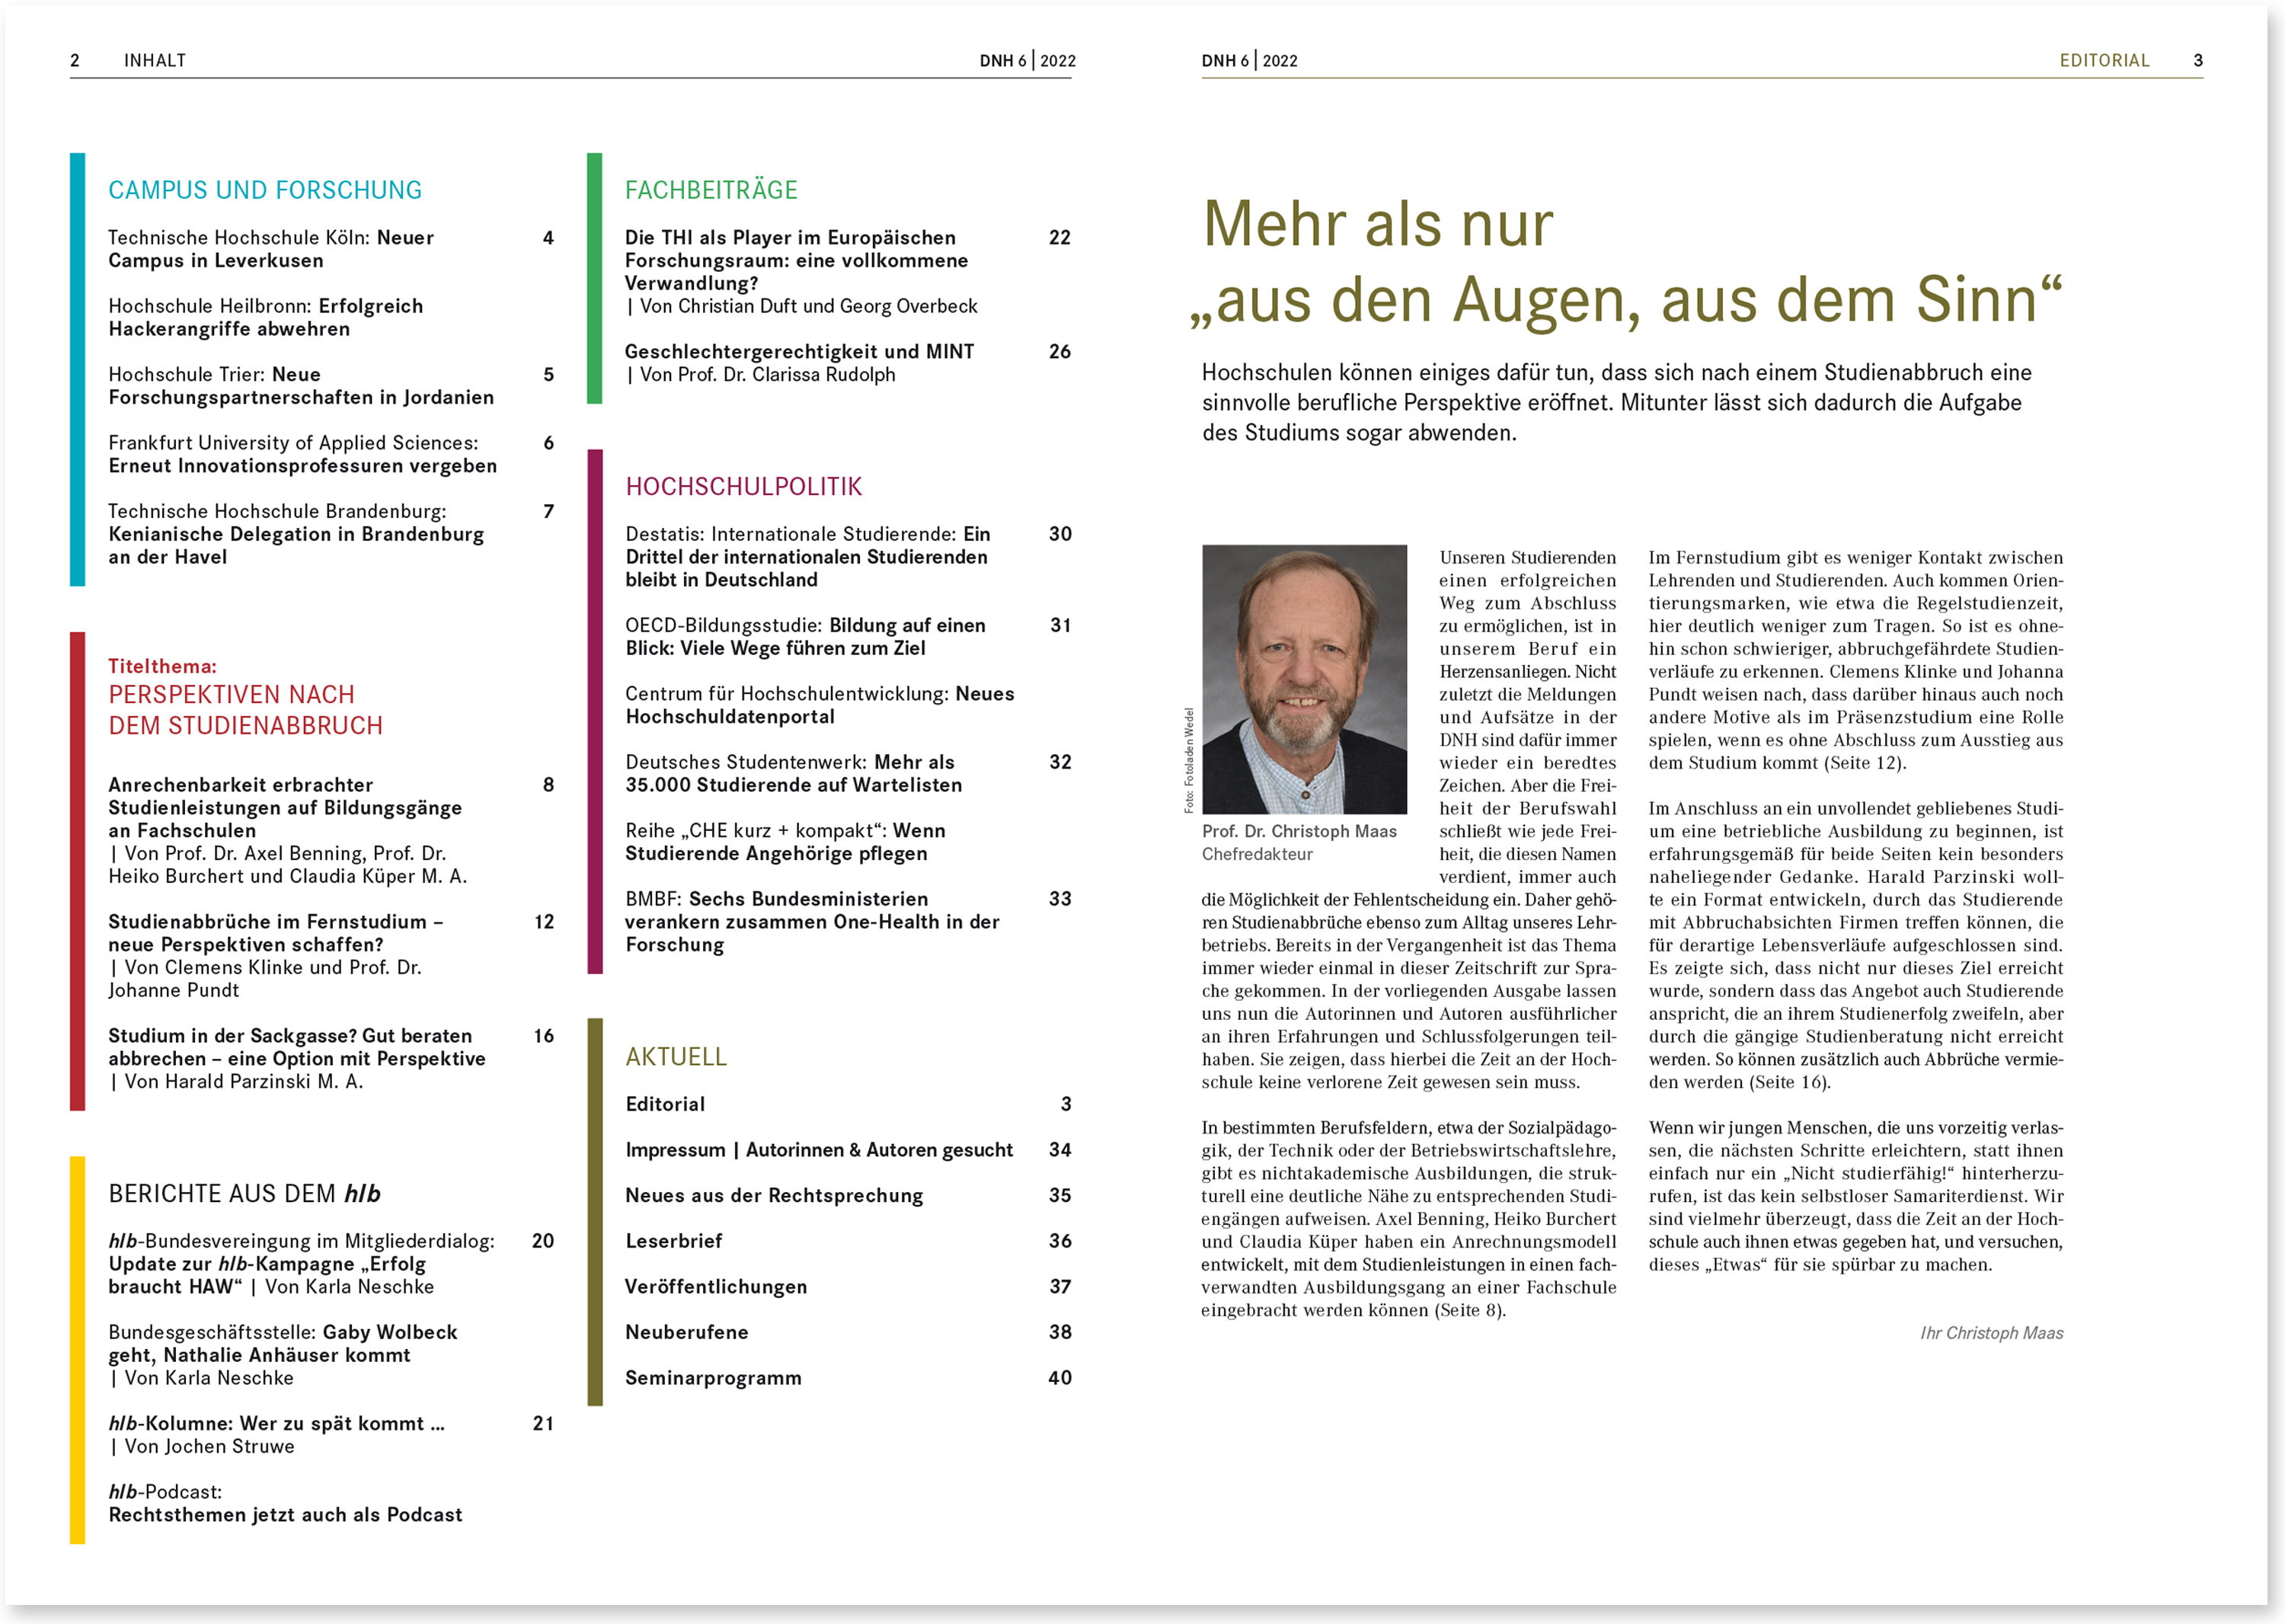 reeberdesign | Hochschullehrerbund hlb | DNH Magazin - Einblick